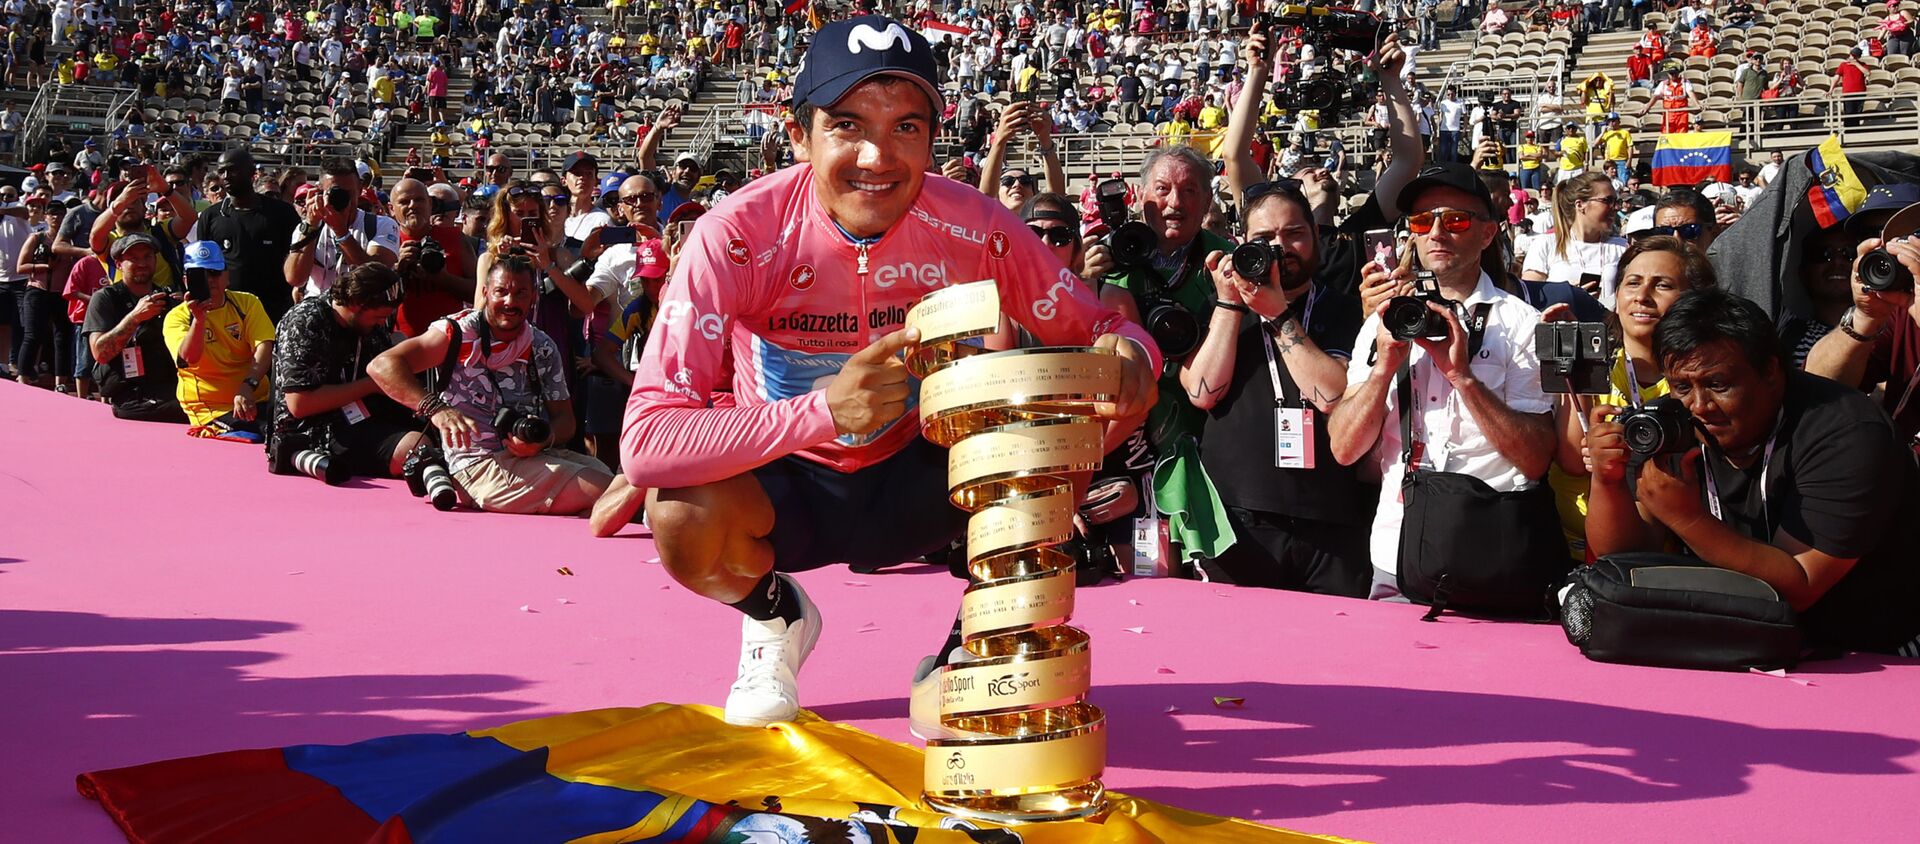 Richard Carapaz ostentando el primer premio del Giro de Italia 2019 sobre la bandera de Ecuador - Sputnik Mundo, 1920, 04.06.2019